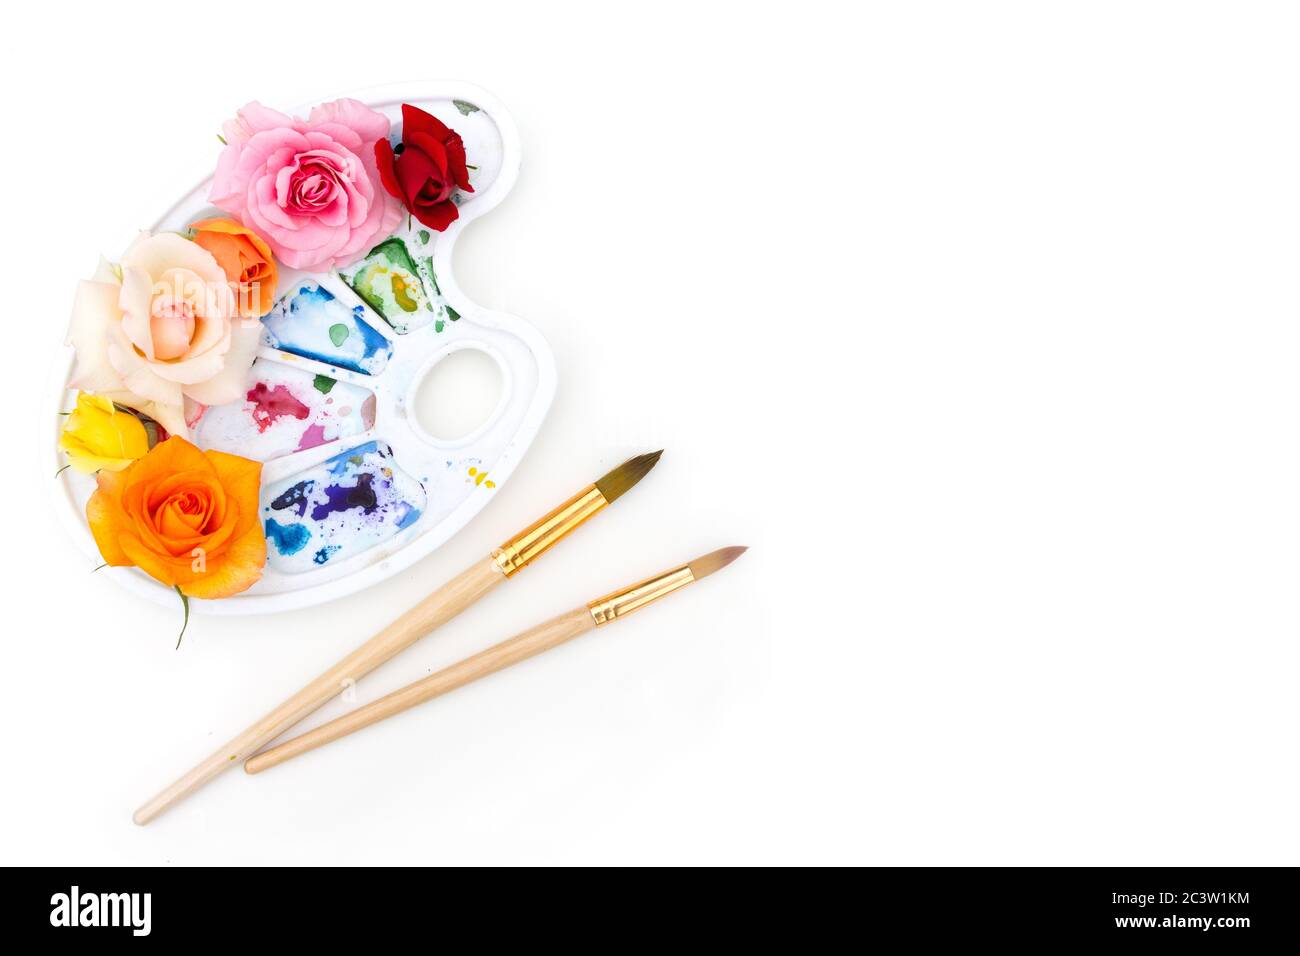 Tavolozza di colori acquerelli con boccioli di rosa multicolore e pennello artistico su sfondo bianco. I colori dell'estate. Concetto creativo di estate colorata. Foto Stock